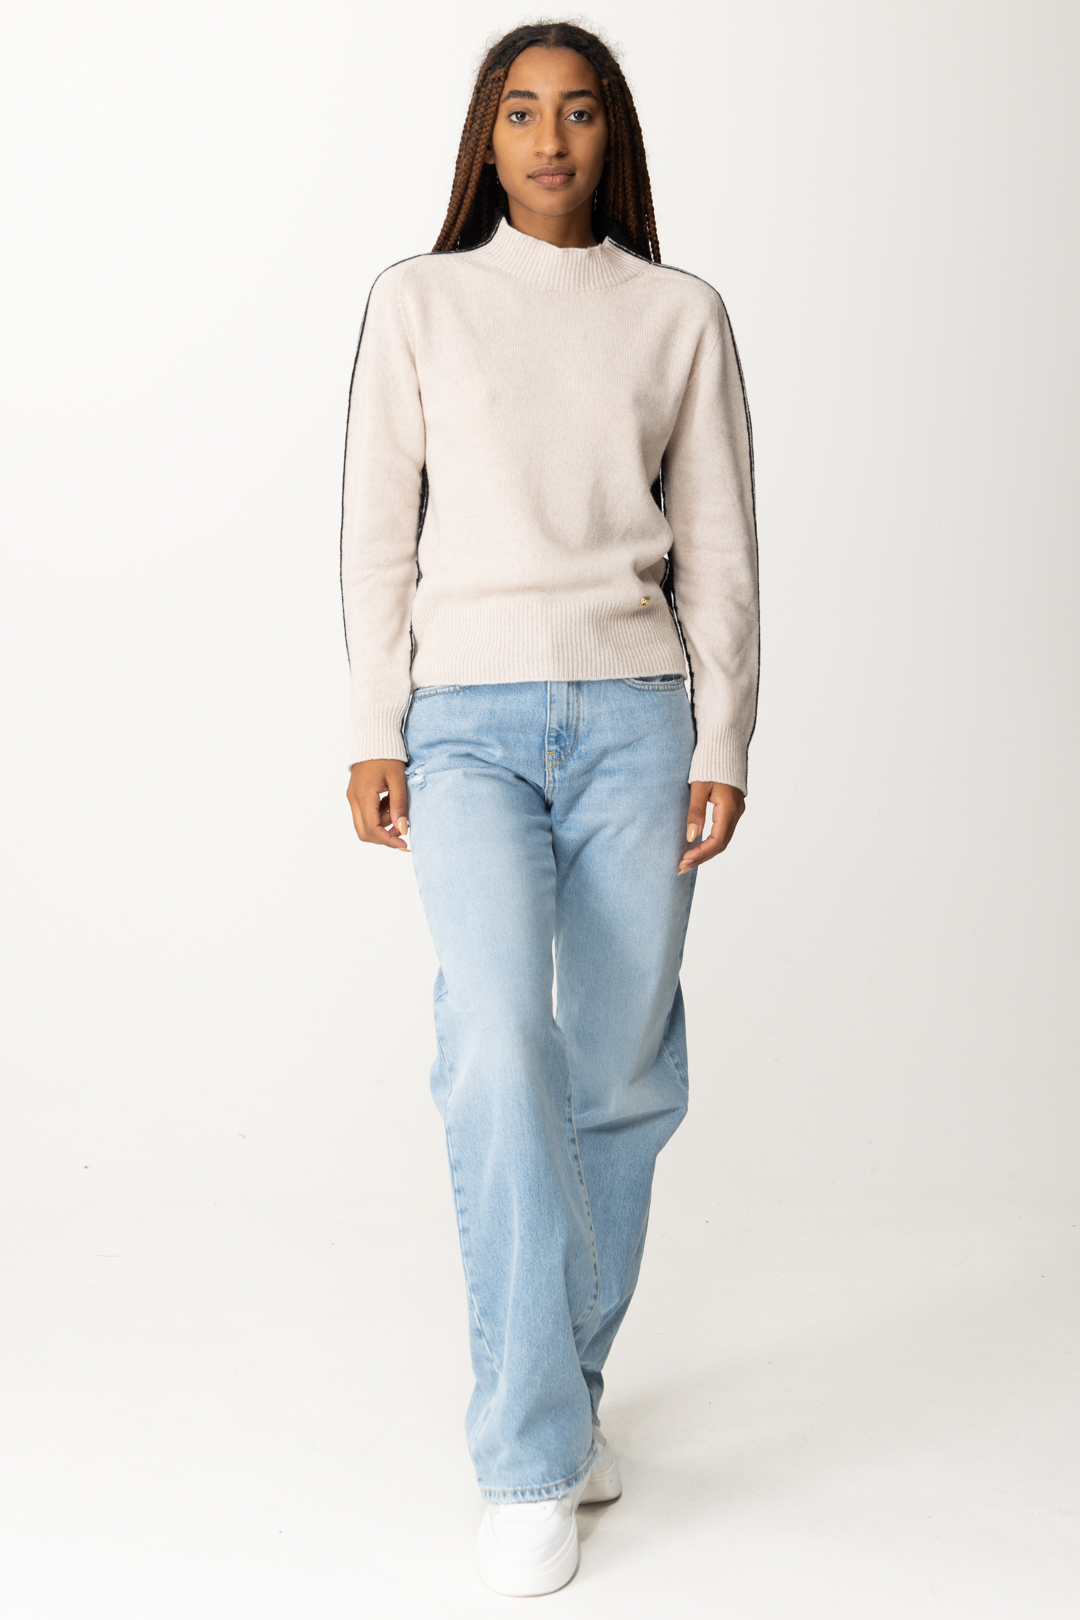 Vorschau: Pinko Zweifarbiger Pullover aus Woll- und Kaschmirmischung BEIGE/NERO